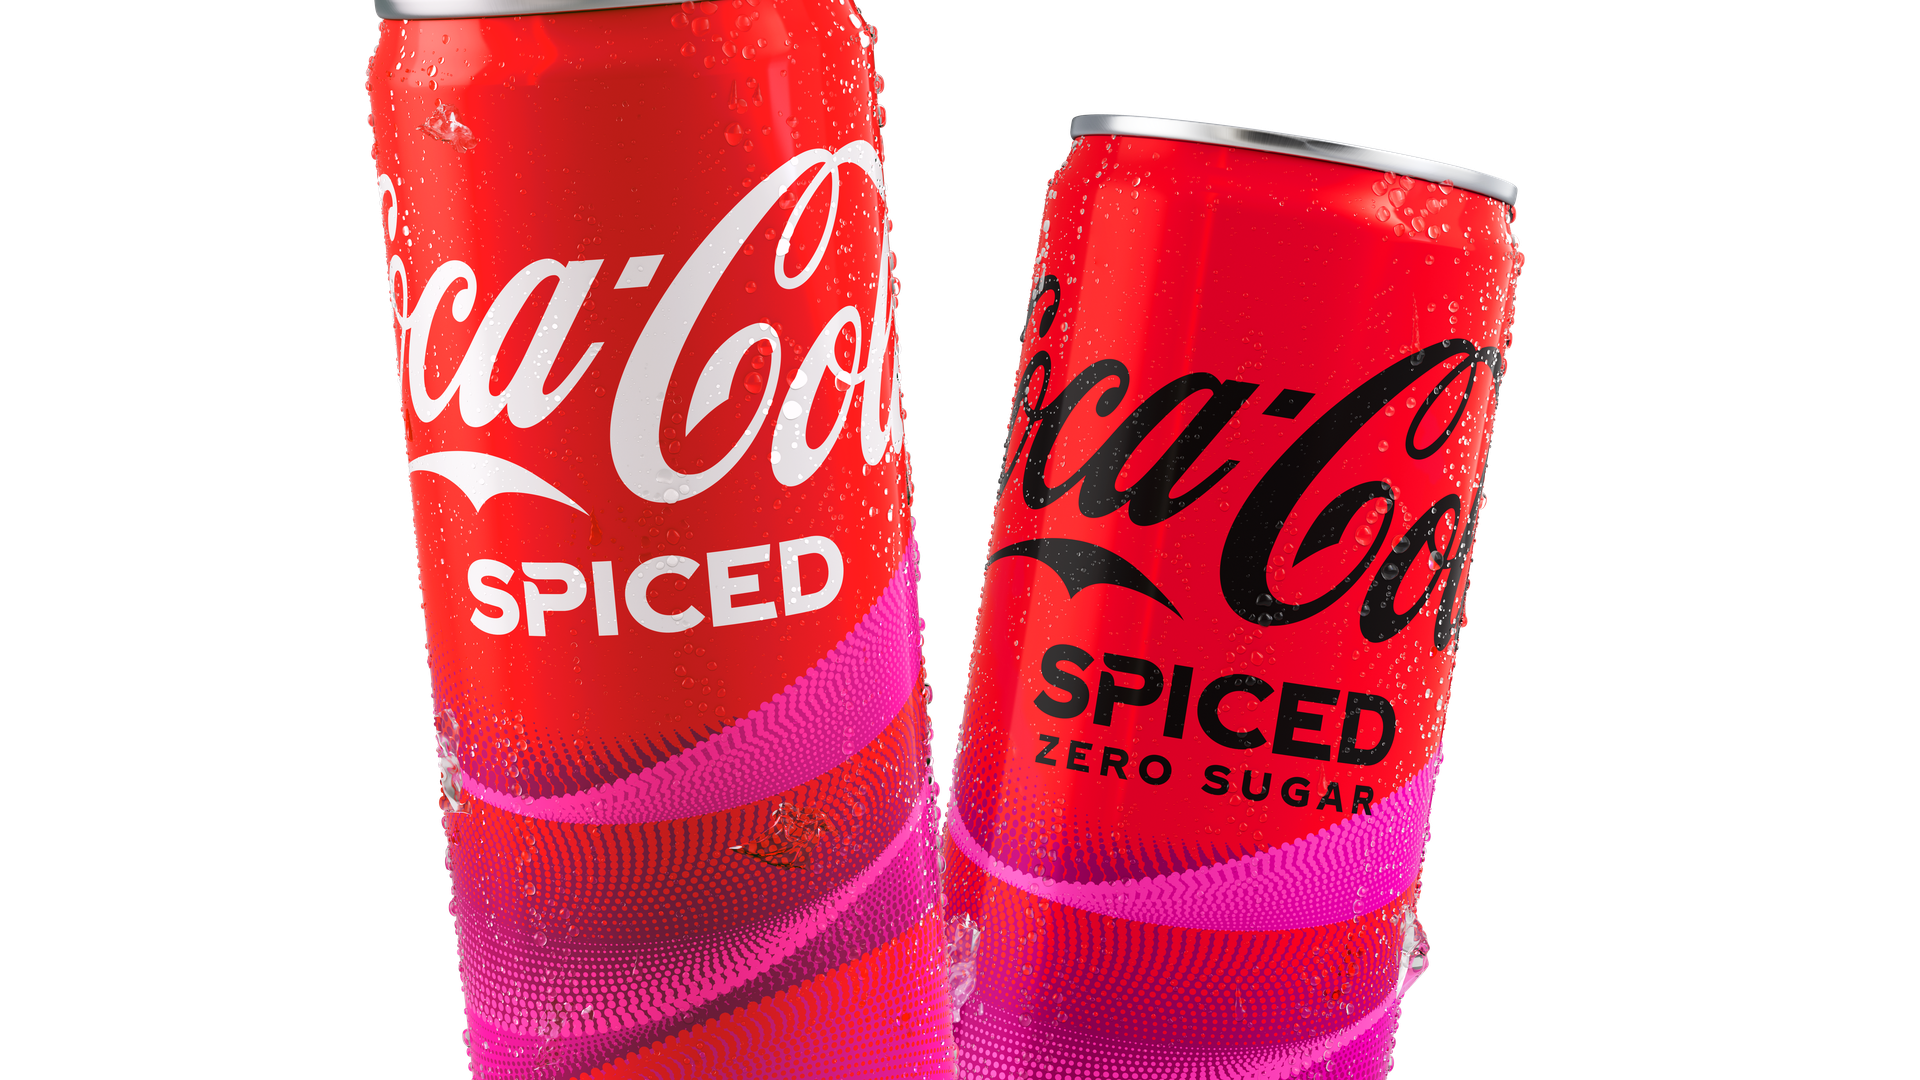 A can of Coca-Cola Spiced and Coca-Cola Spiced Zero Sugar